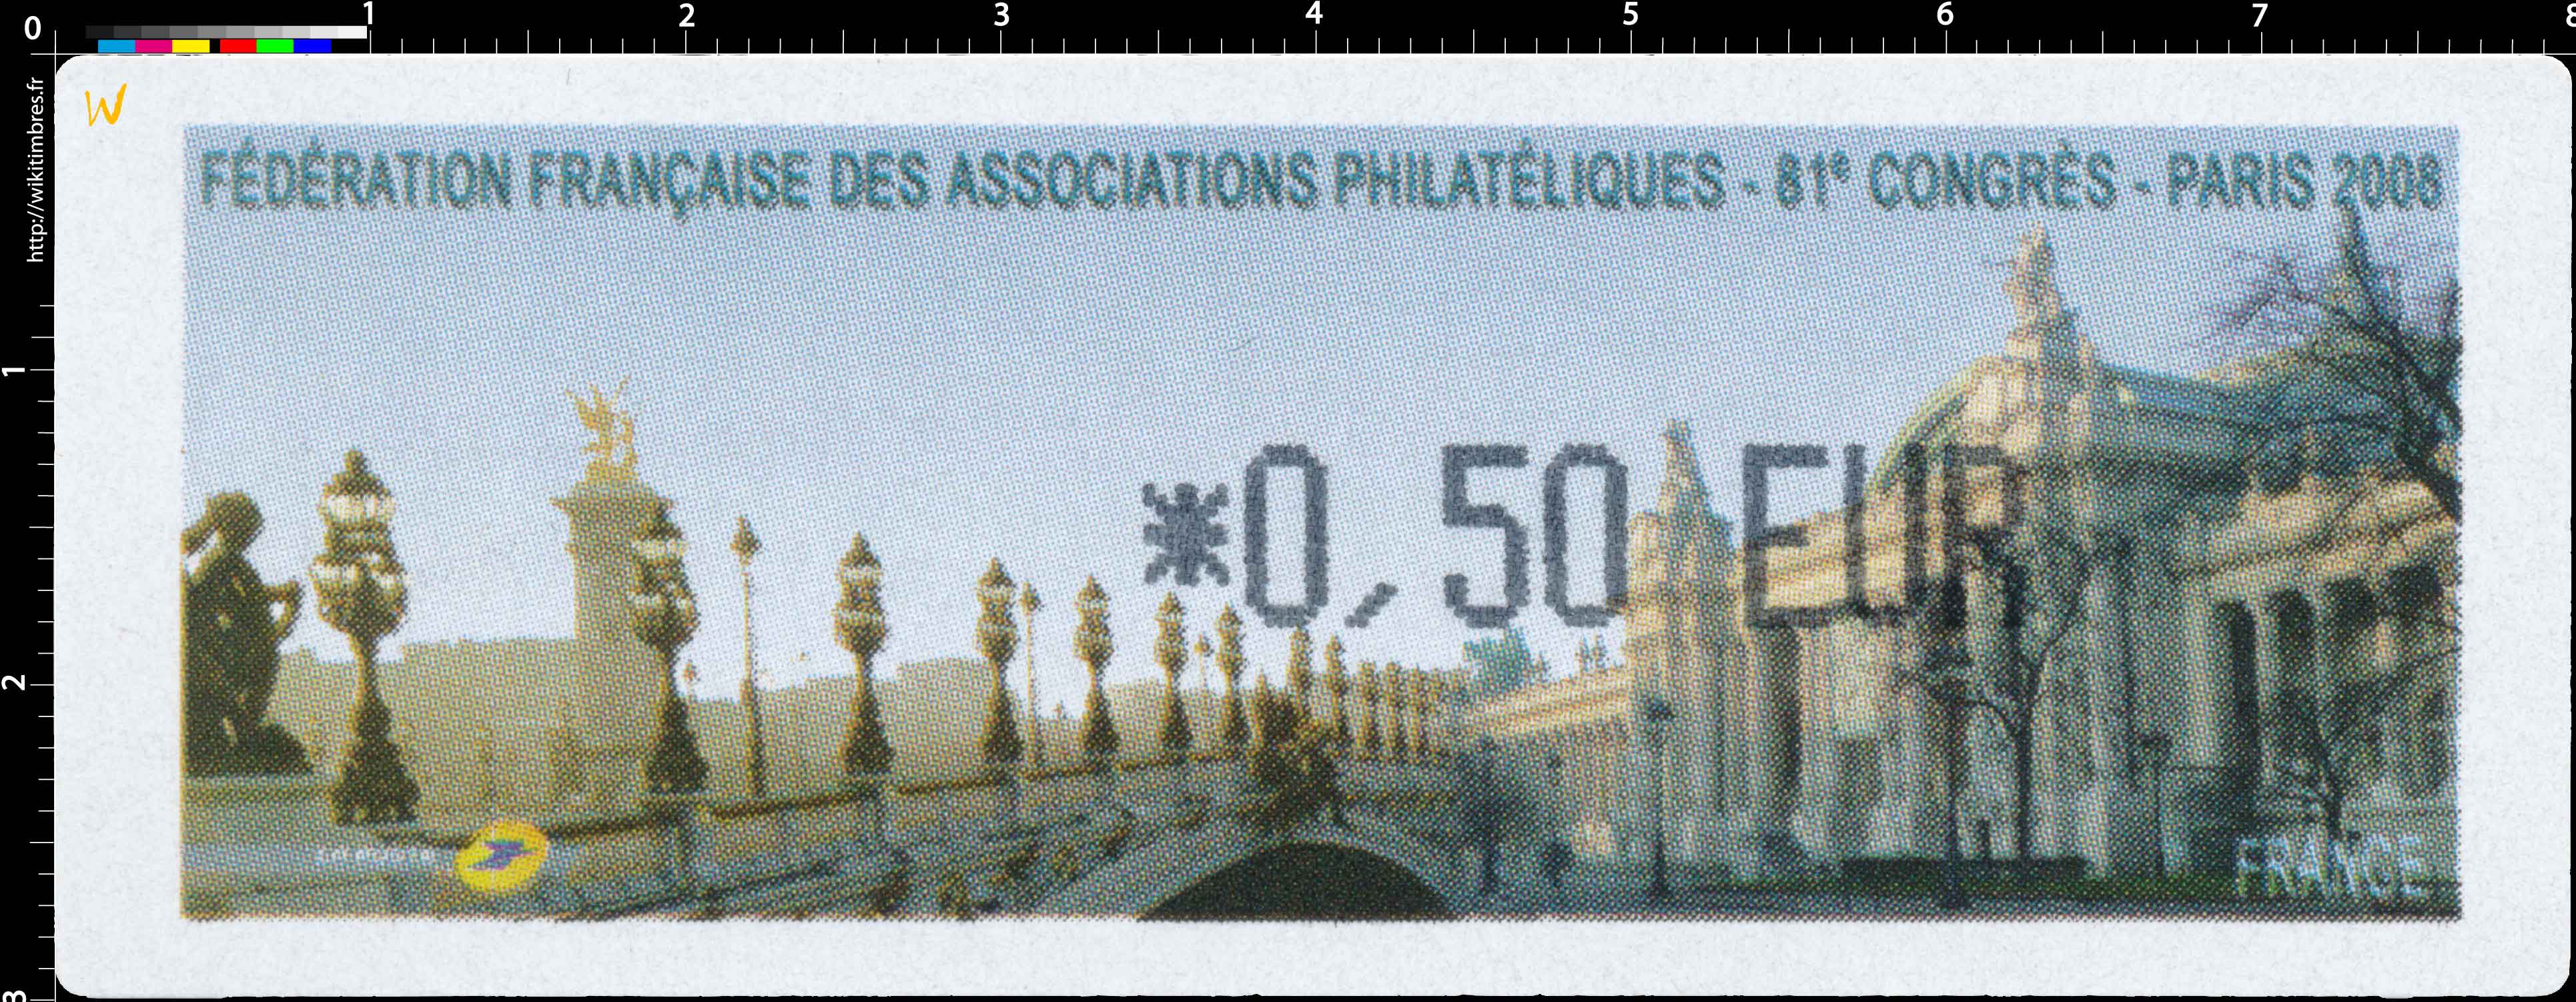 FÉDÉRATION FRANCAISE DES ASSOCIATIONS PHILATÉLIQUES 81e CONGRES - PARIS 2008